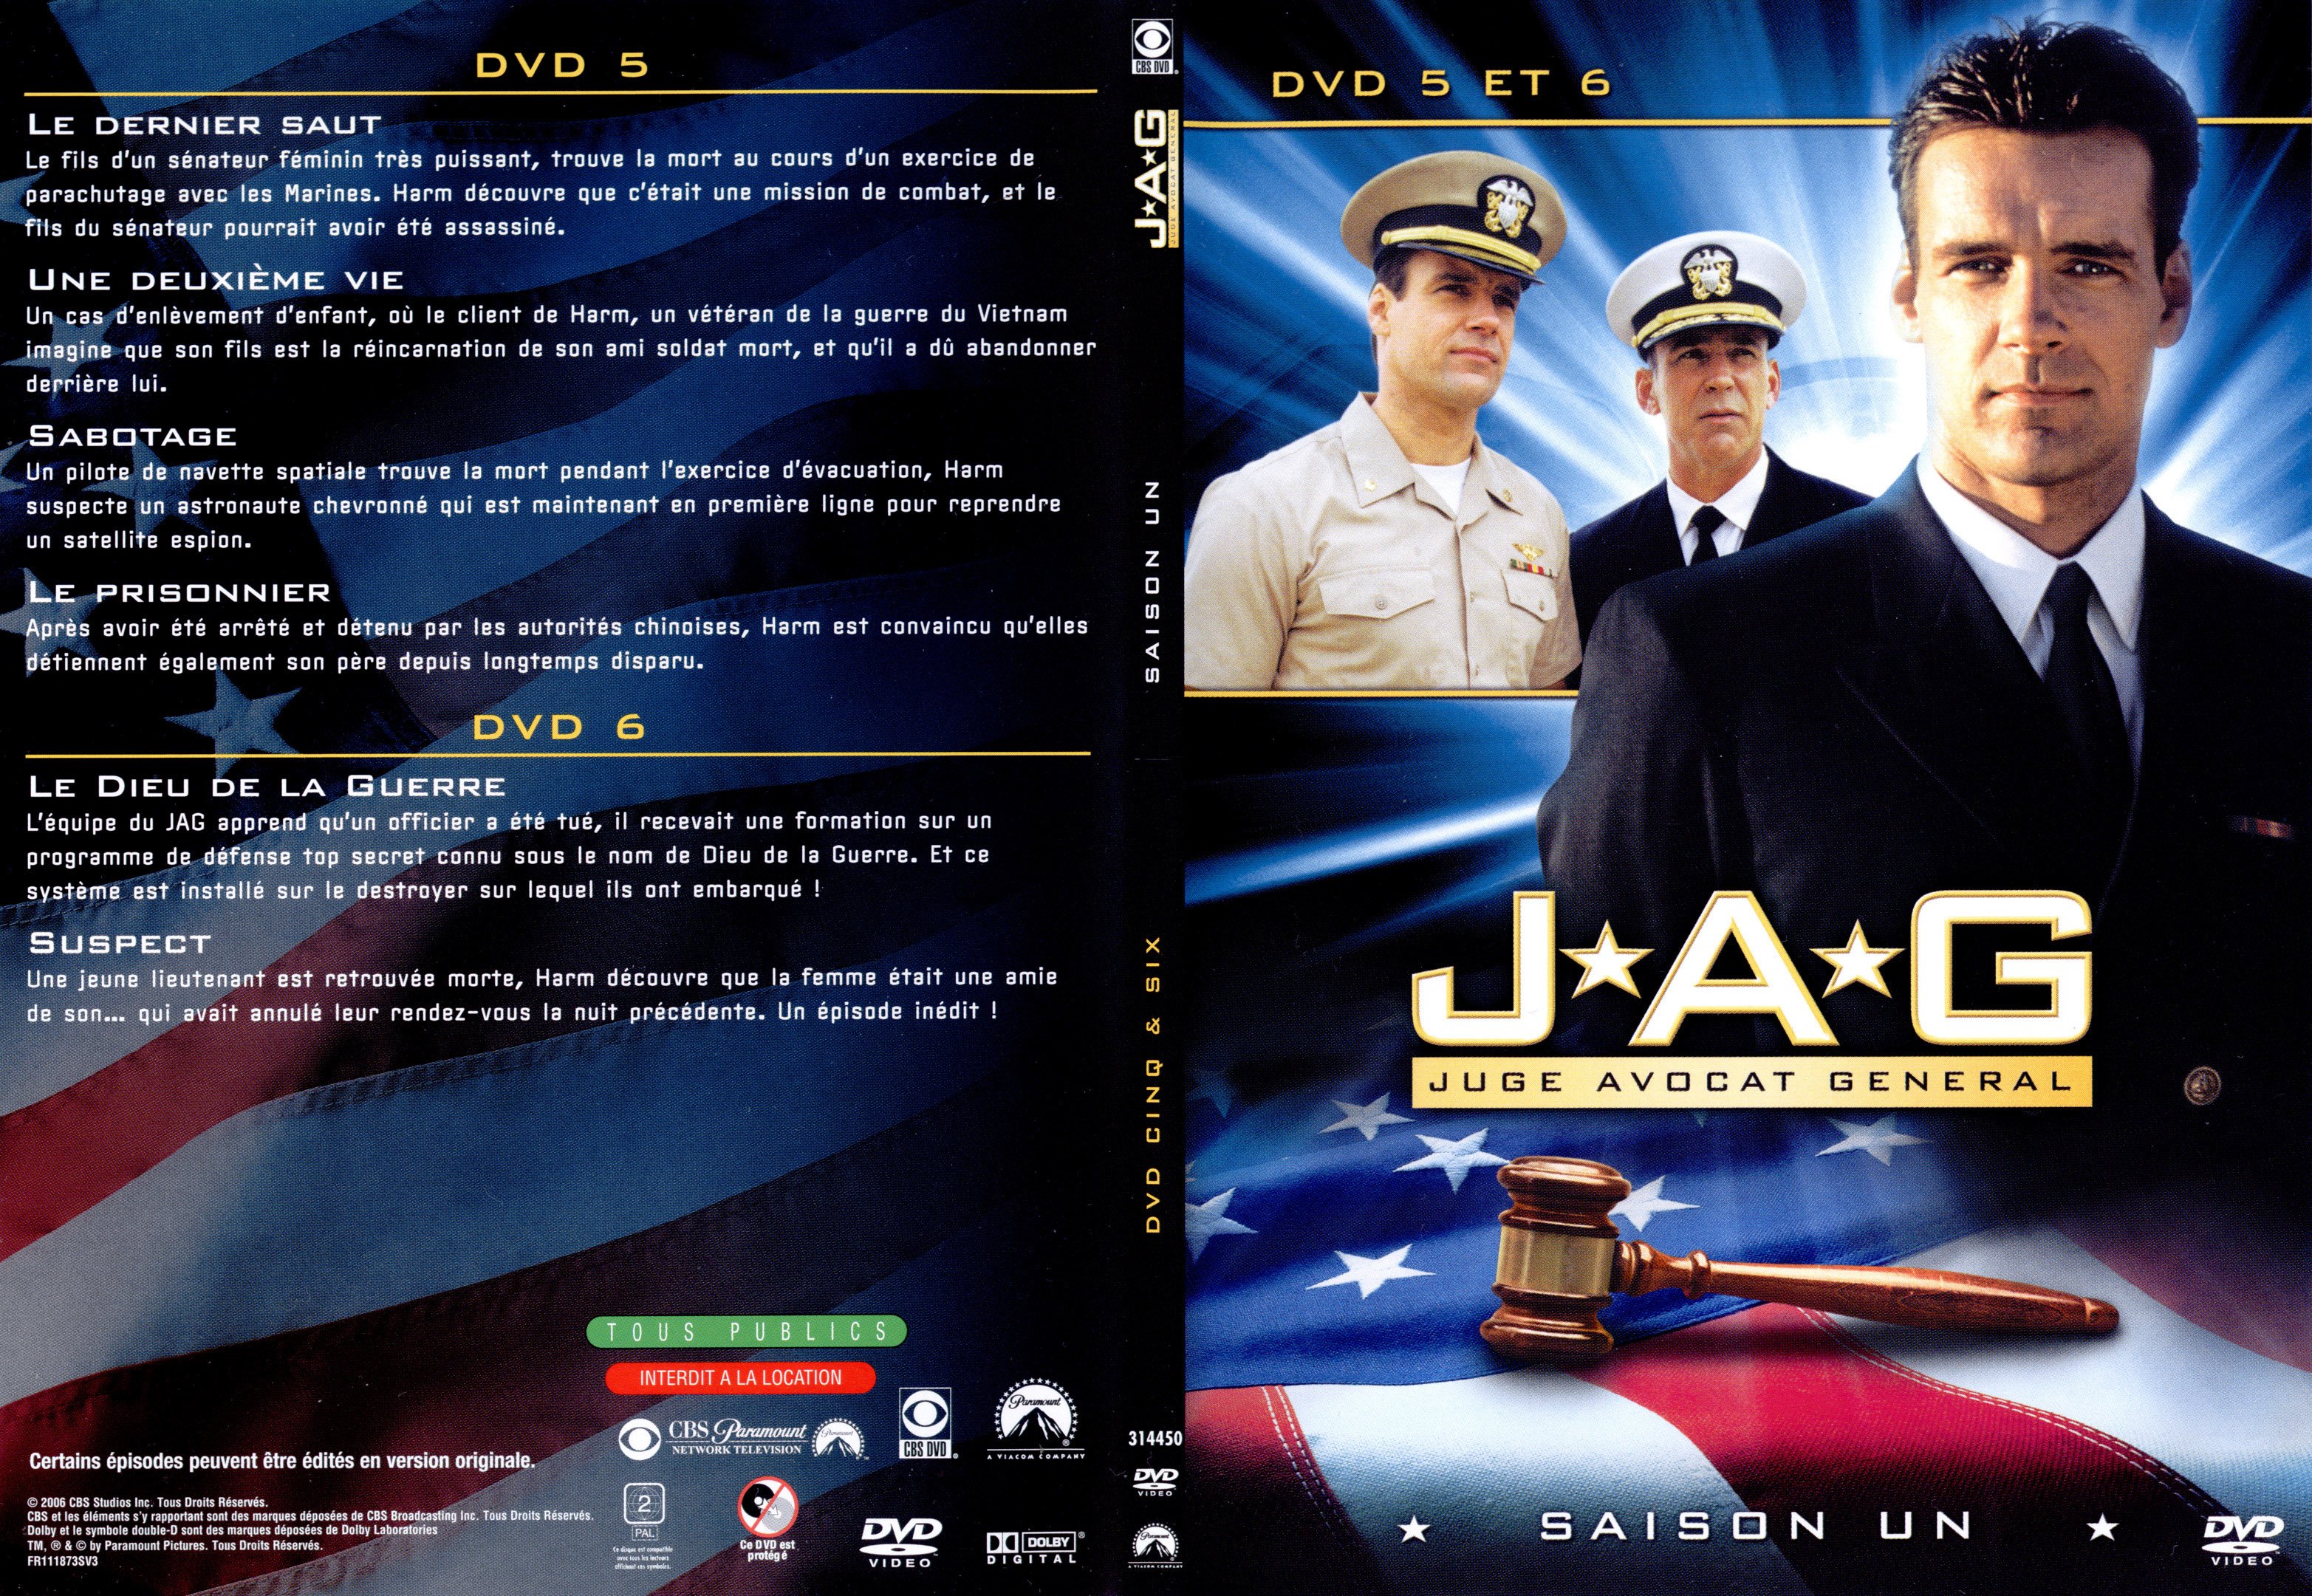 Jaquette DVD JAG Saison 1 DVD 5-6